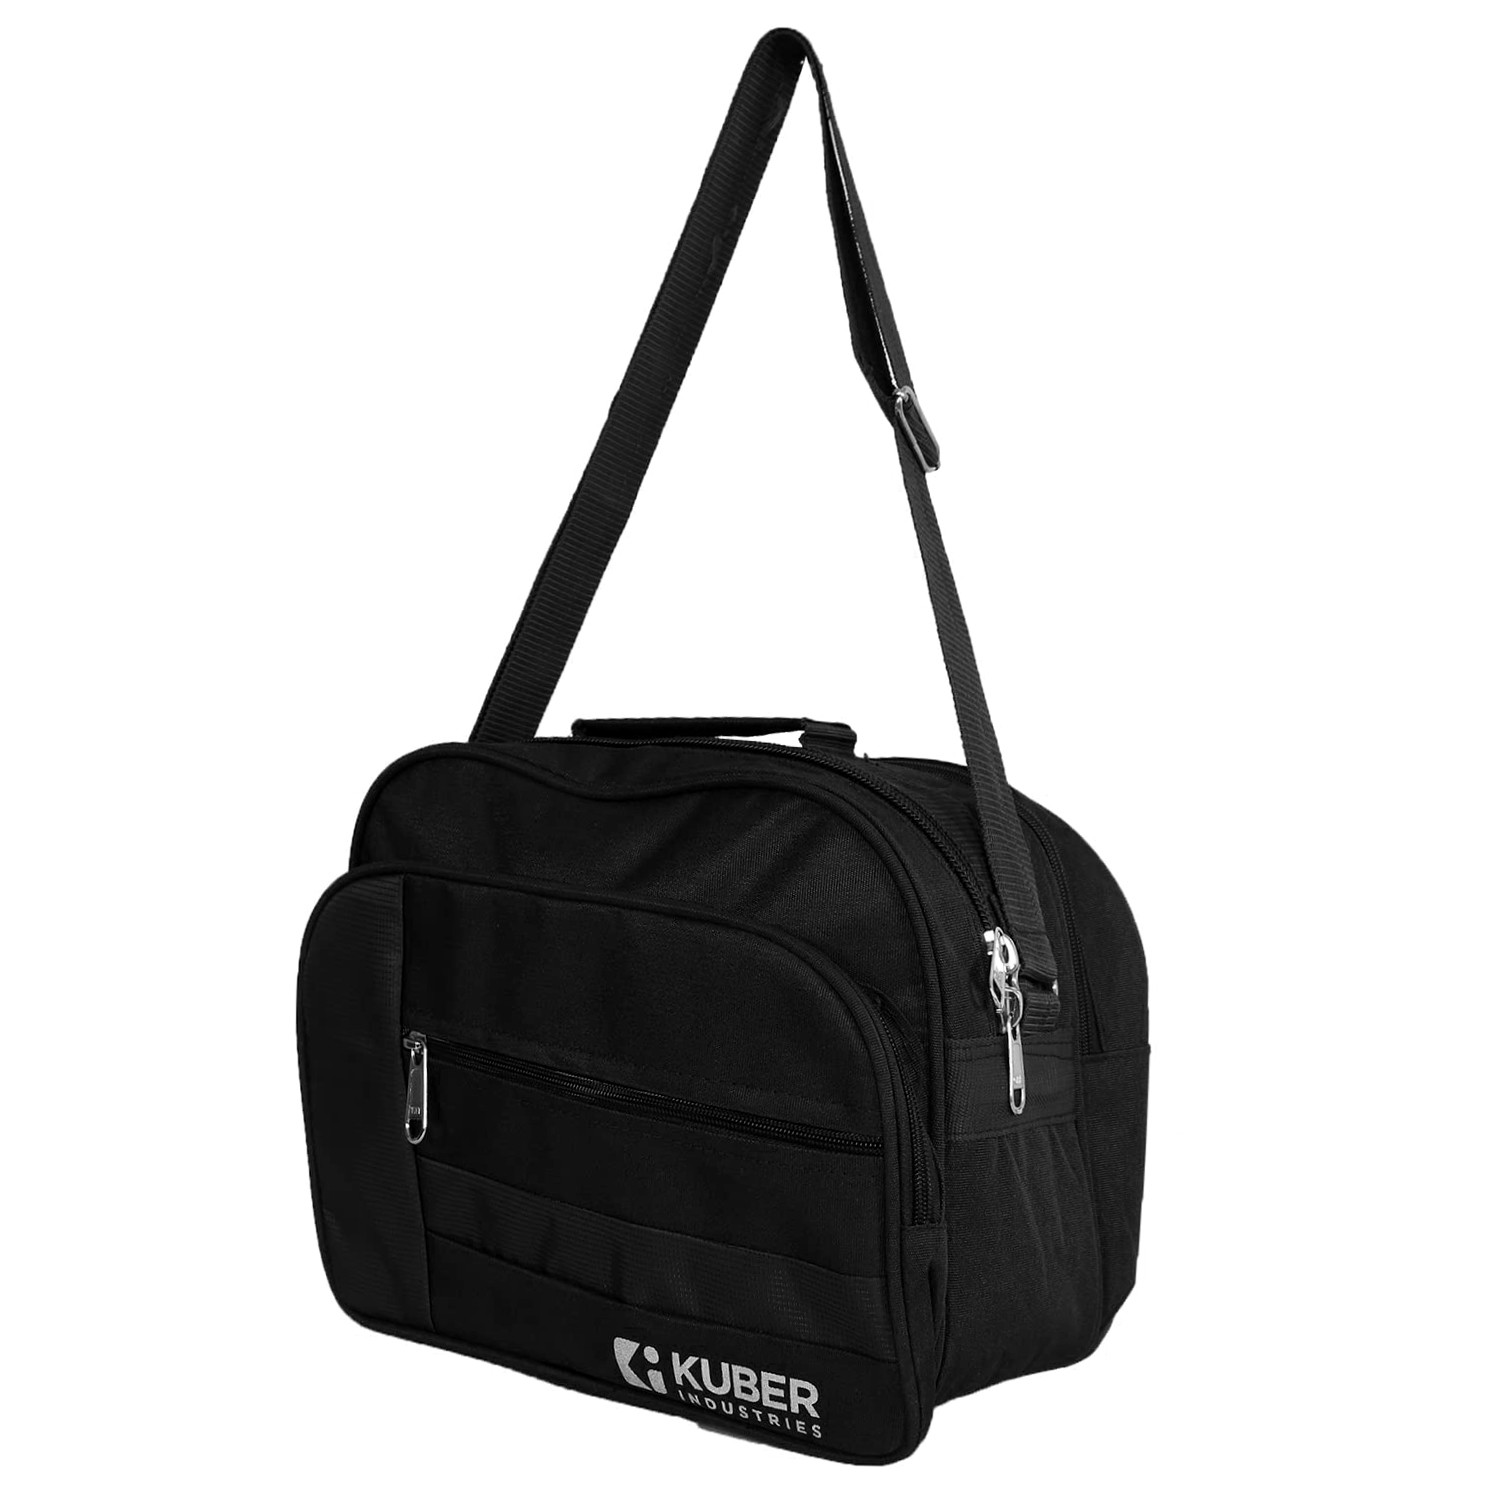 Kuber Industries Sling Bag|Canvas Adjustable Strap 4 Compartment Crossbody Bag|Sling Bag For Men|Sling Bags For Women|1 Inside Zip Pocket for Travel & Office (Black)